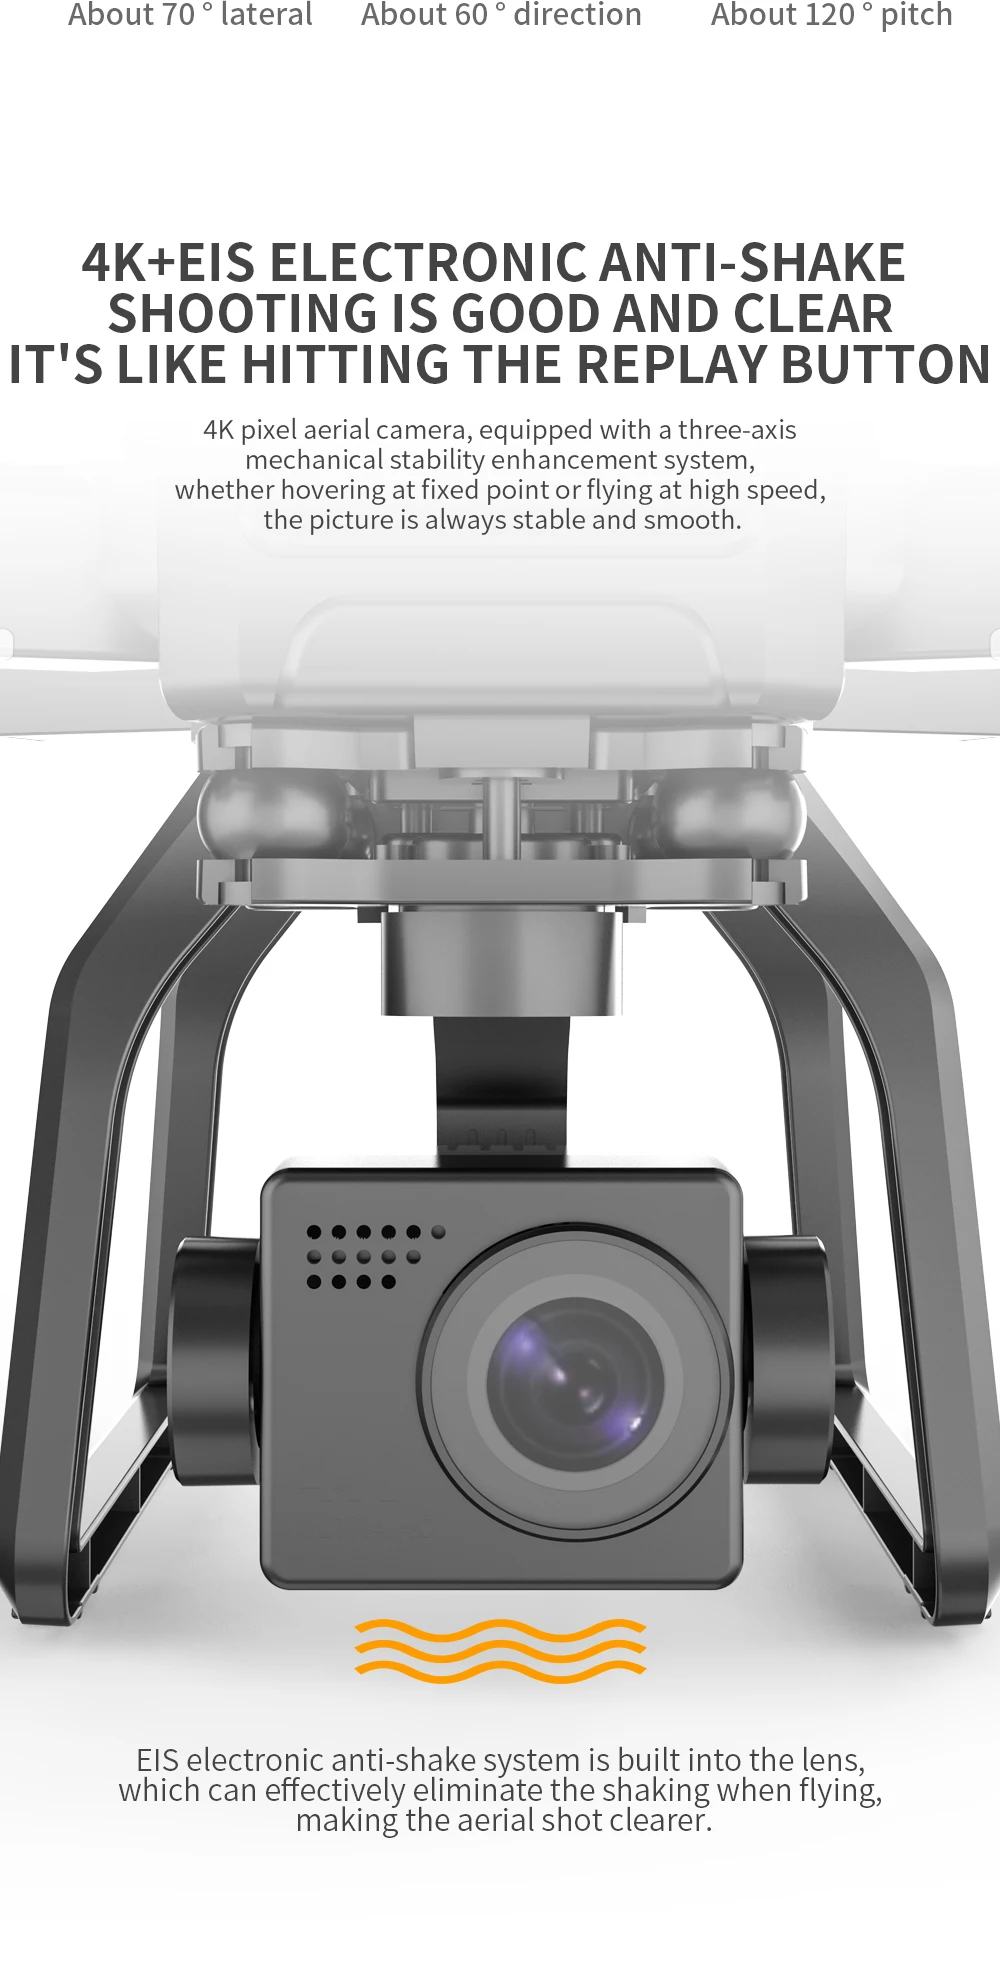 HOSHI-Dron SJRC F7 PRO con GPS, cámara 4K Dual HD, 3 ejes, cardán aéreo, fotografía aérea, Motor sin escobillas, RC, distancia de 3km